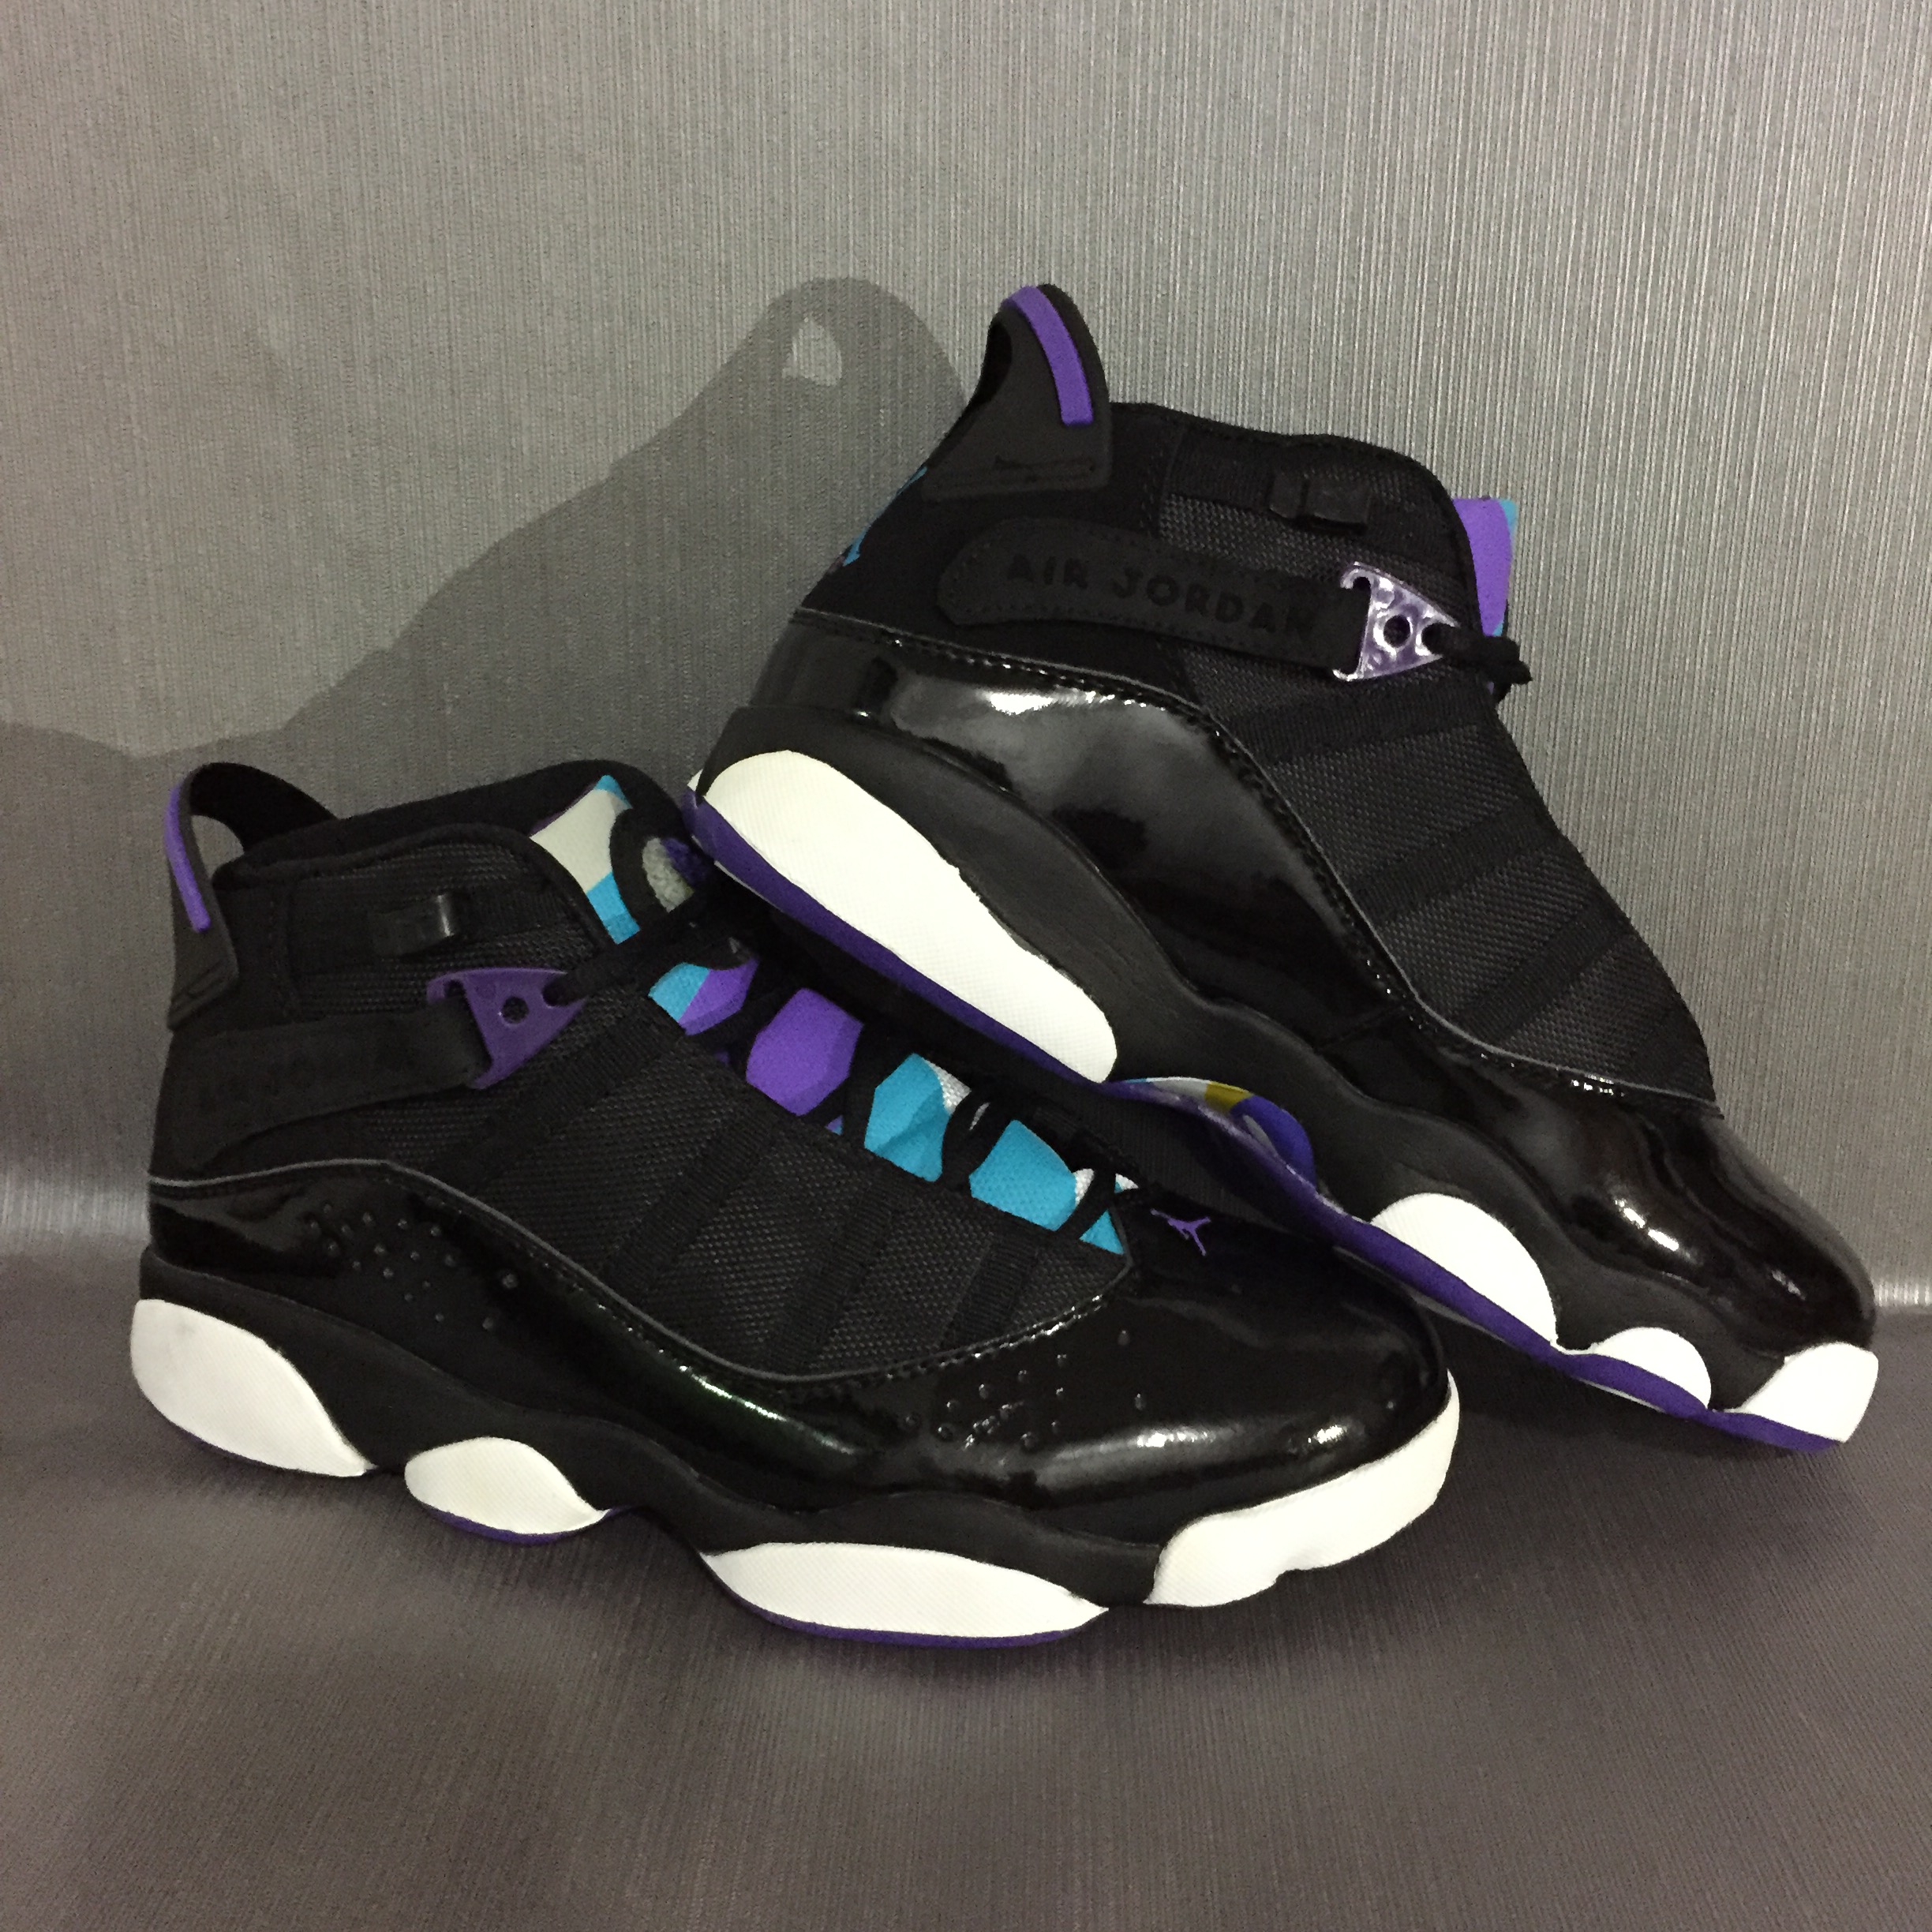 Jordan 6 Rings Black Purple White Shoes 